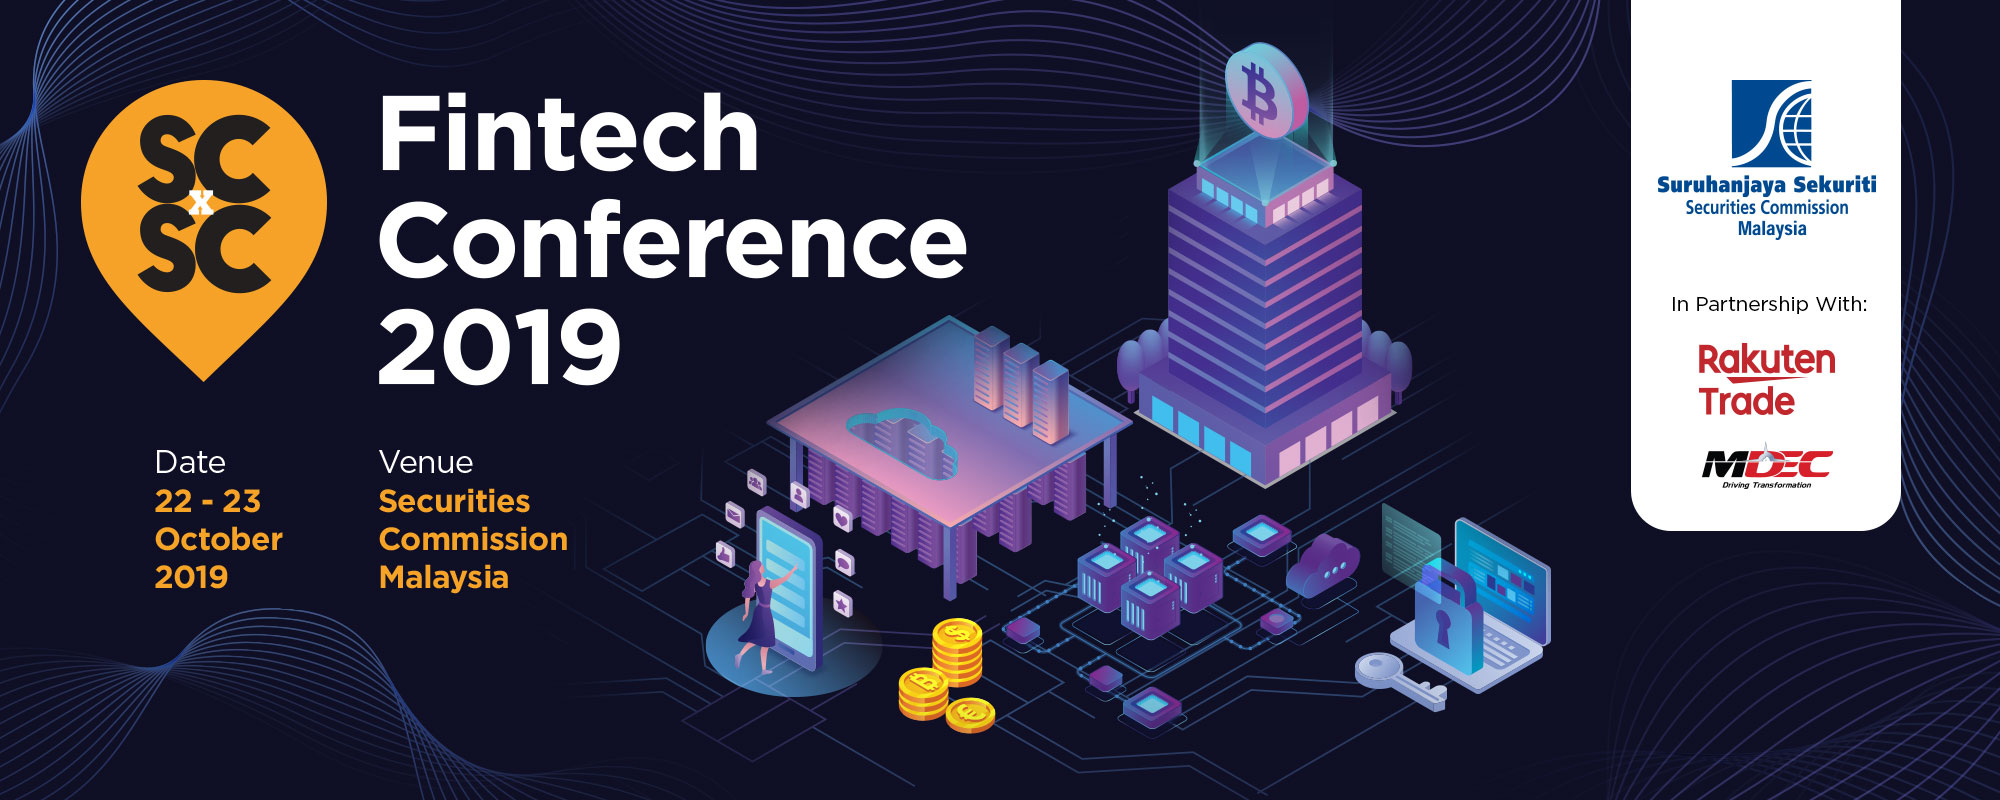 SCxSC Fintech Conference 2019